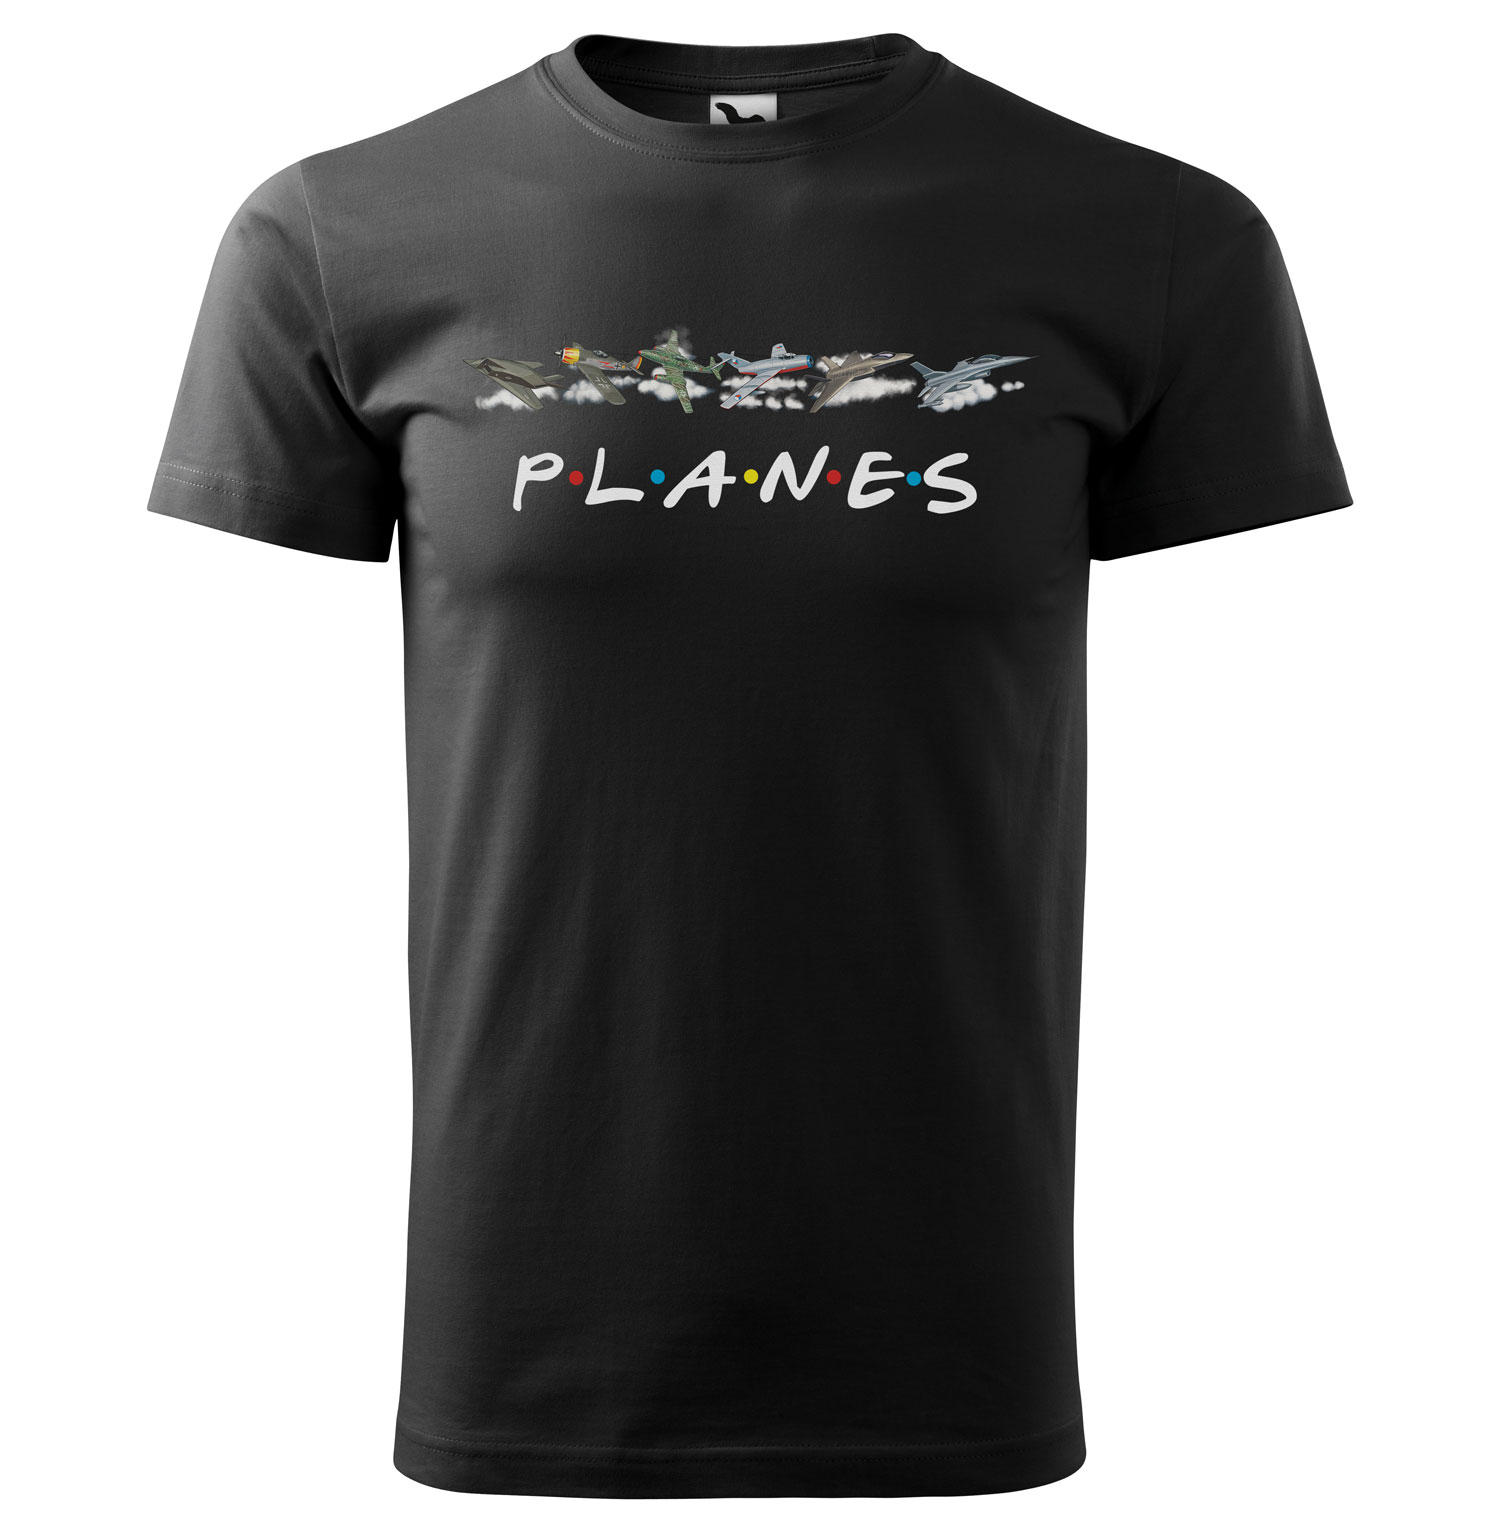 Tričko Planes (Velikost: 3XL, Typ: pro muže, Barva trička: Černá)